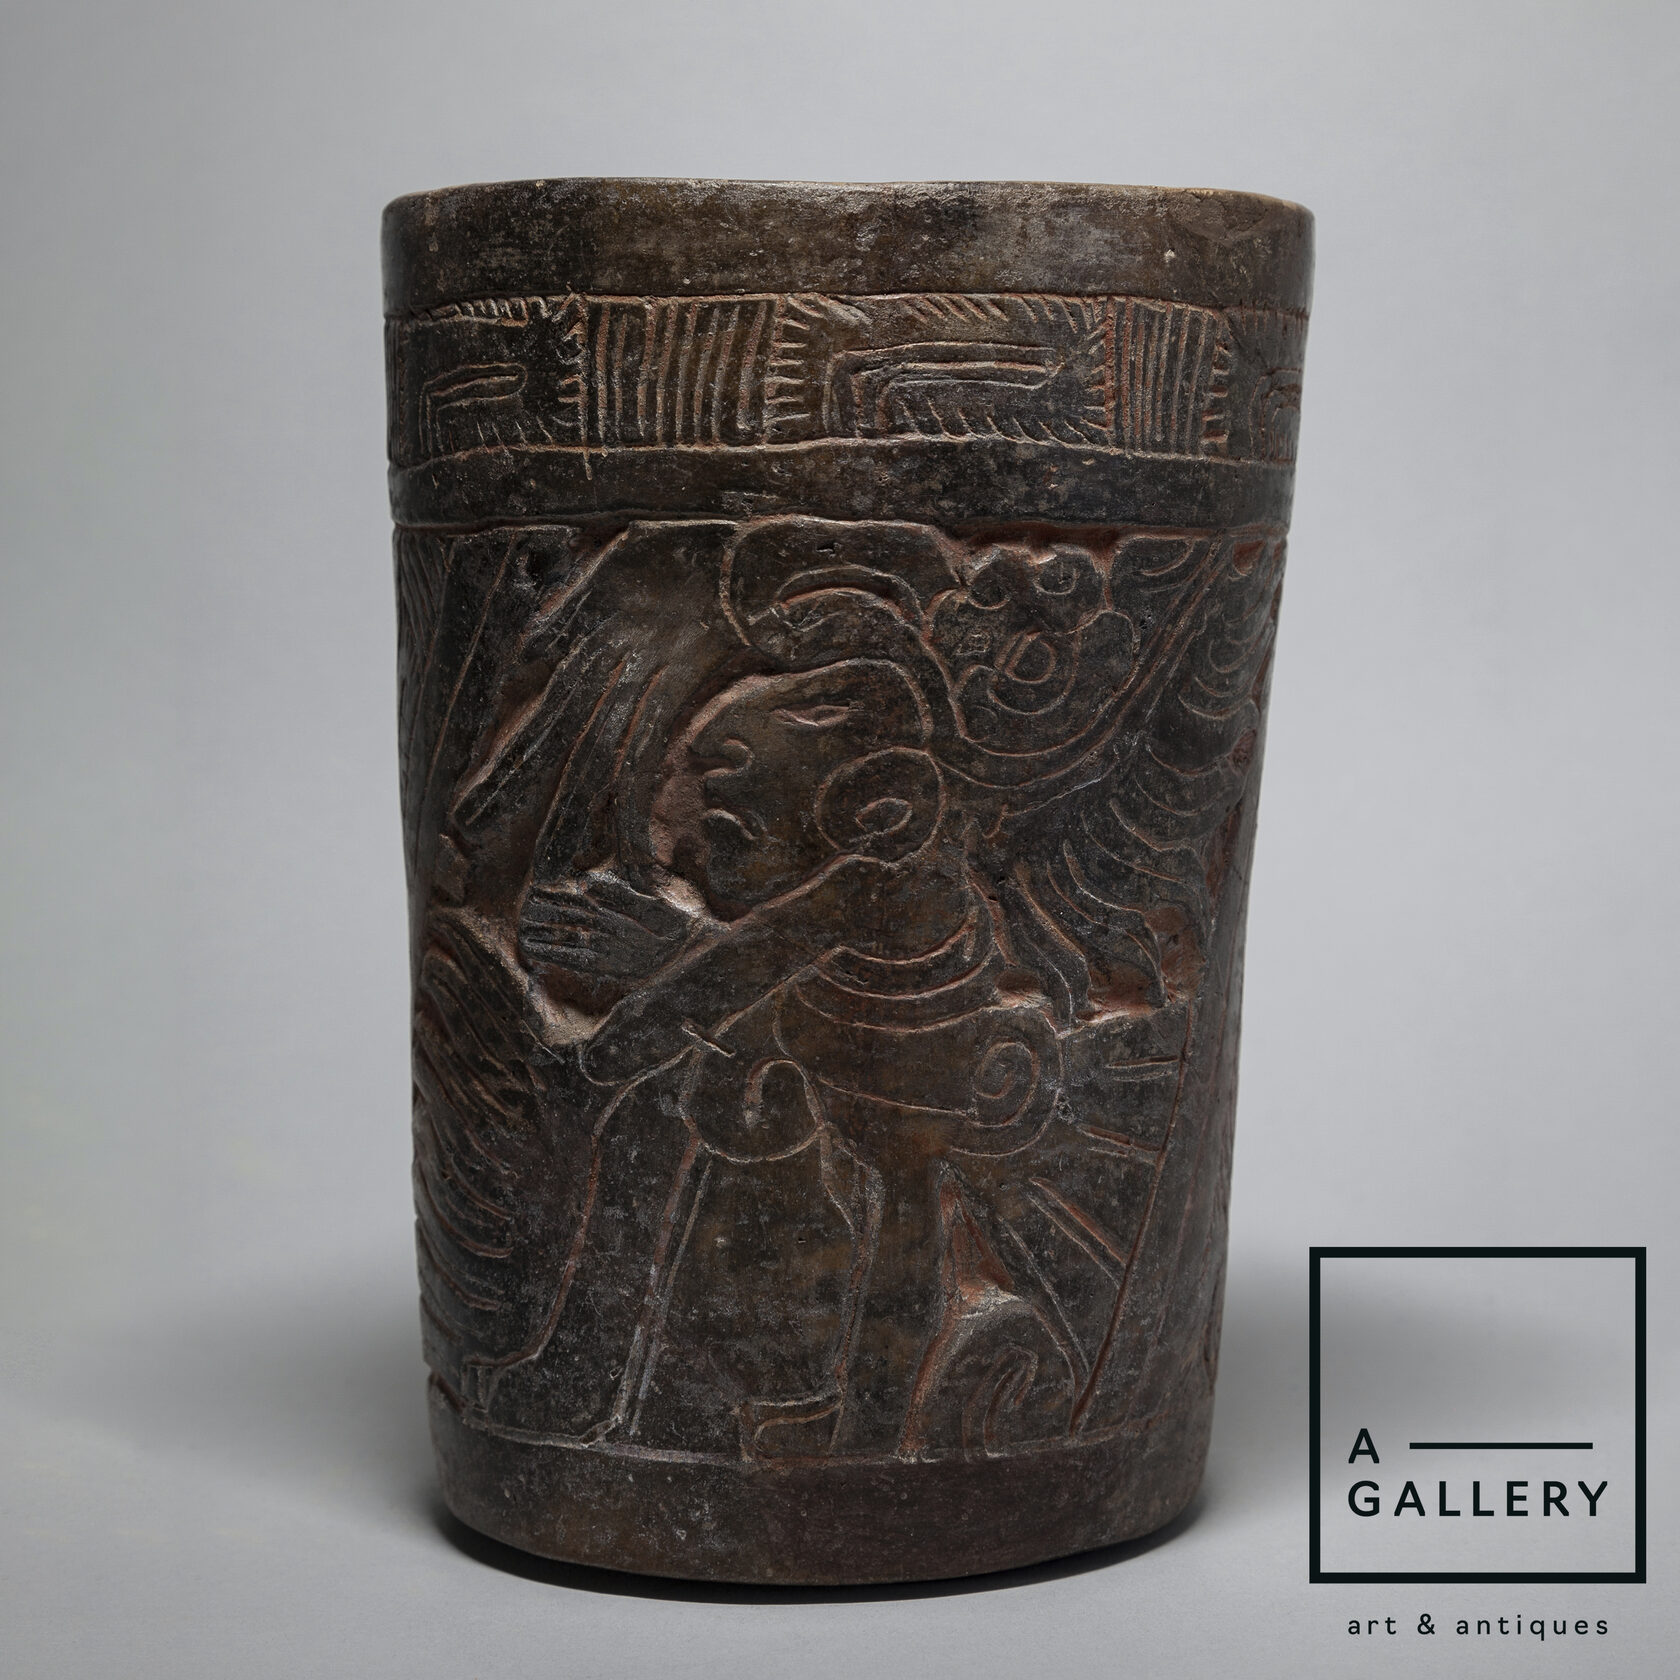 Сосуд с изображением фигуры правителя, Культура майя (500-800 гг. н.э.), поздний классический период, Мезоамерика